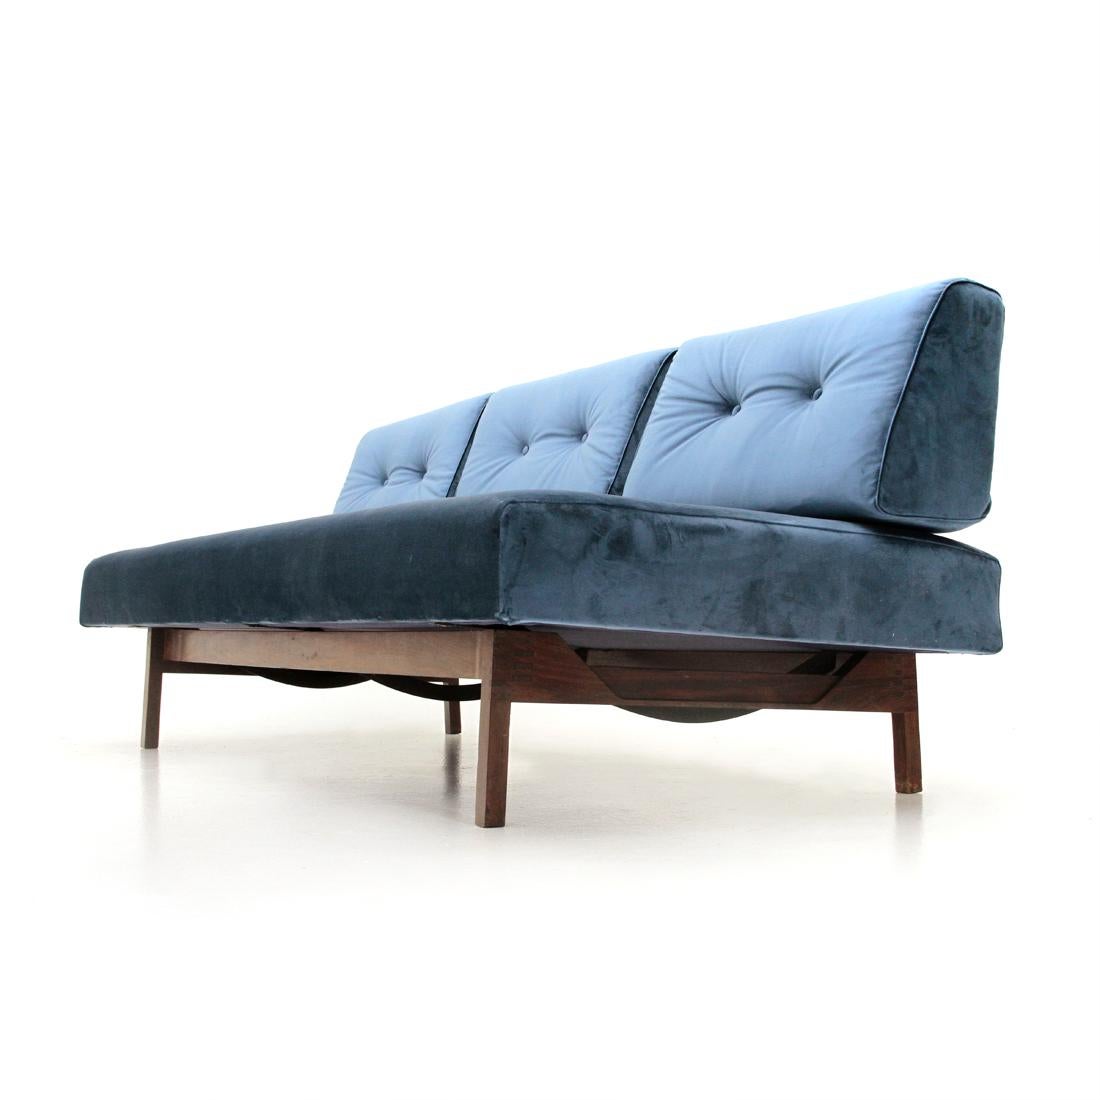 Midcentury Italian Blue Velvet Sofa Model 872 by Gianfranco Frattini for Cassin 1